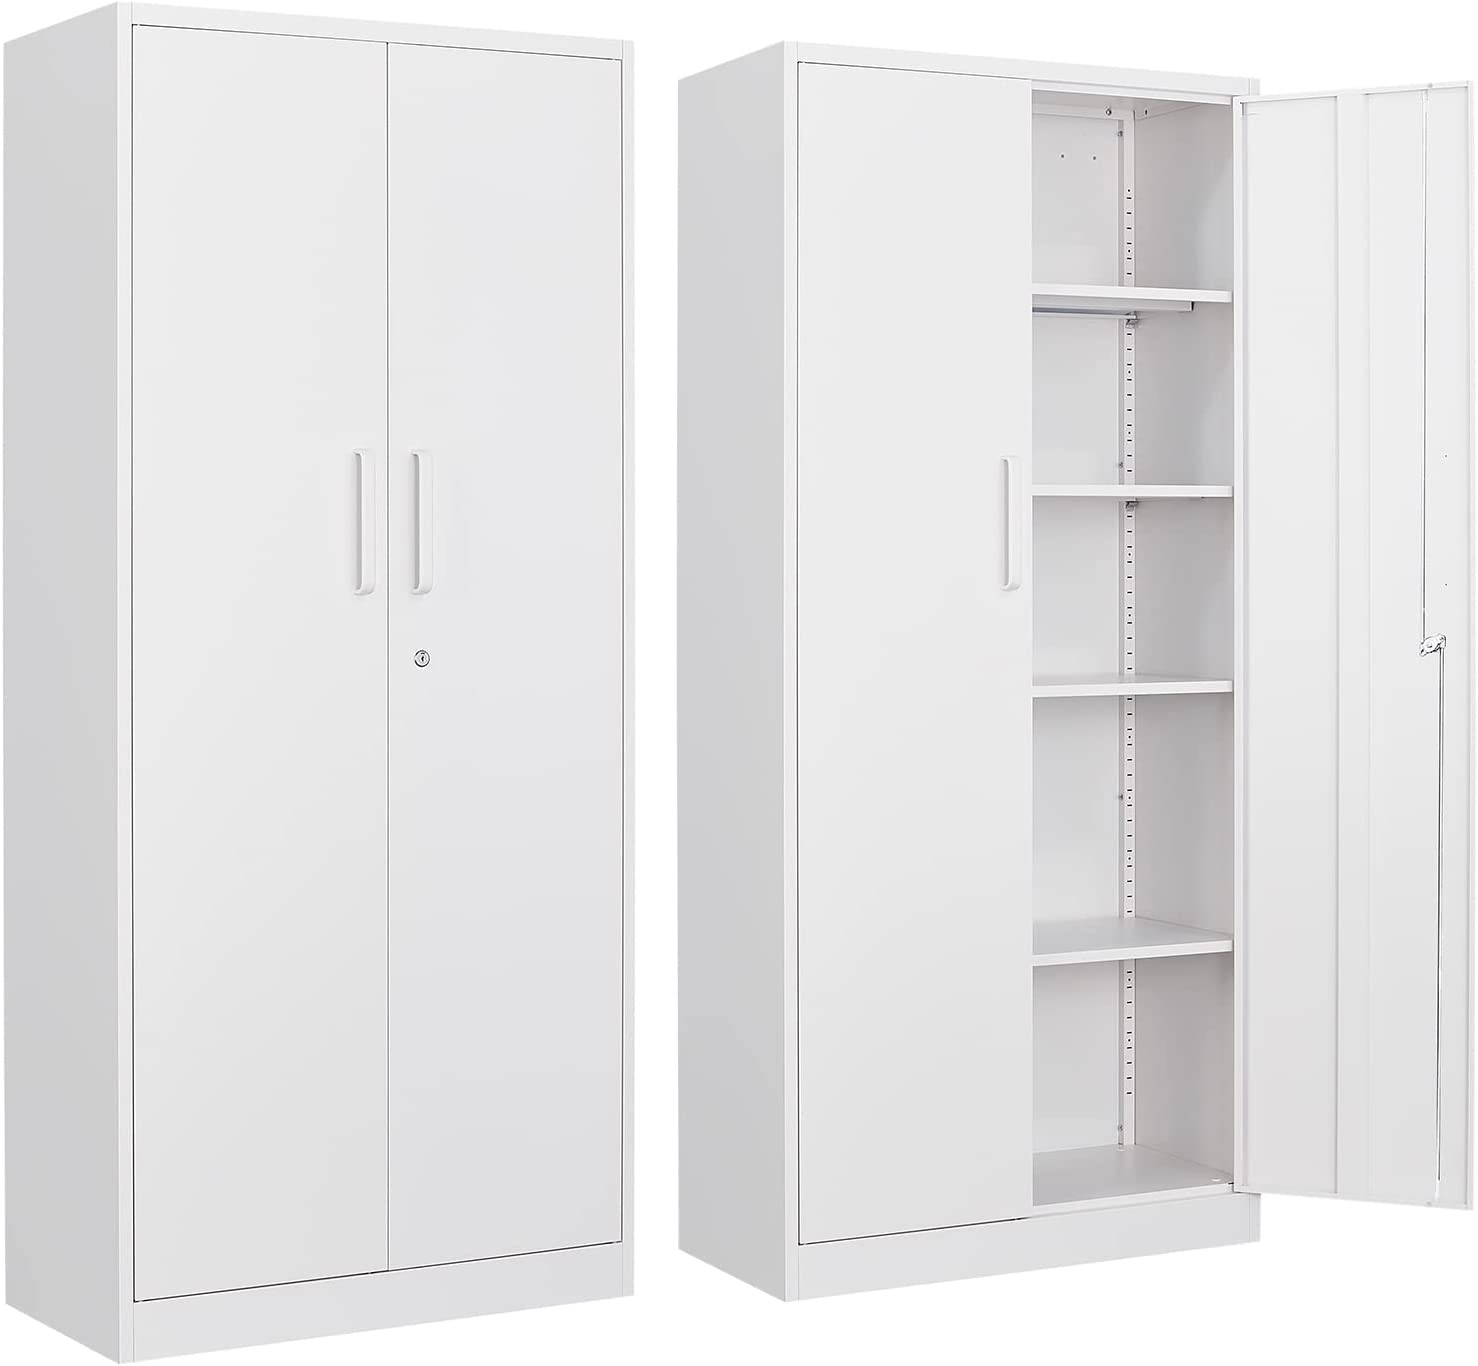 Yizosh Metal Garage Storage Cabinet 